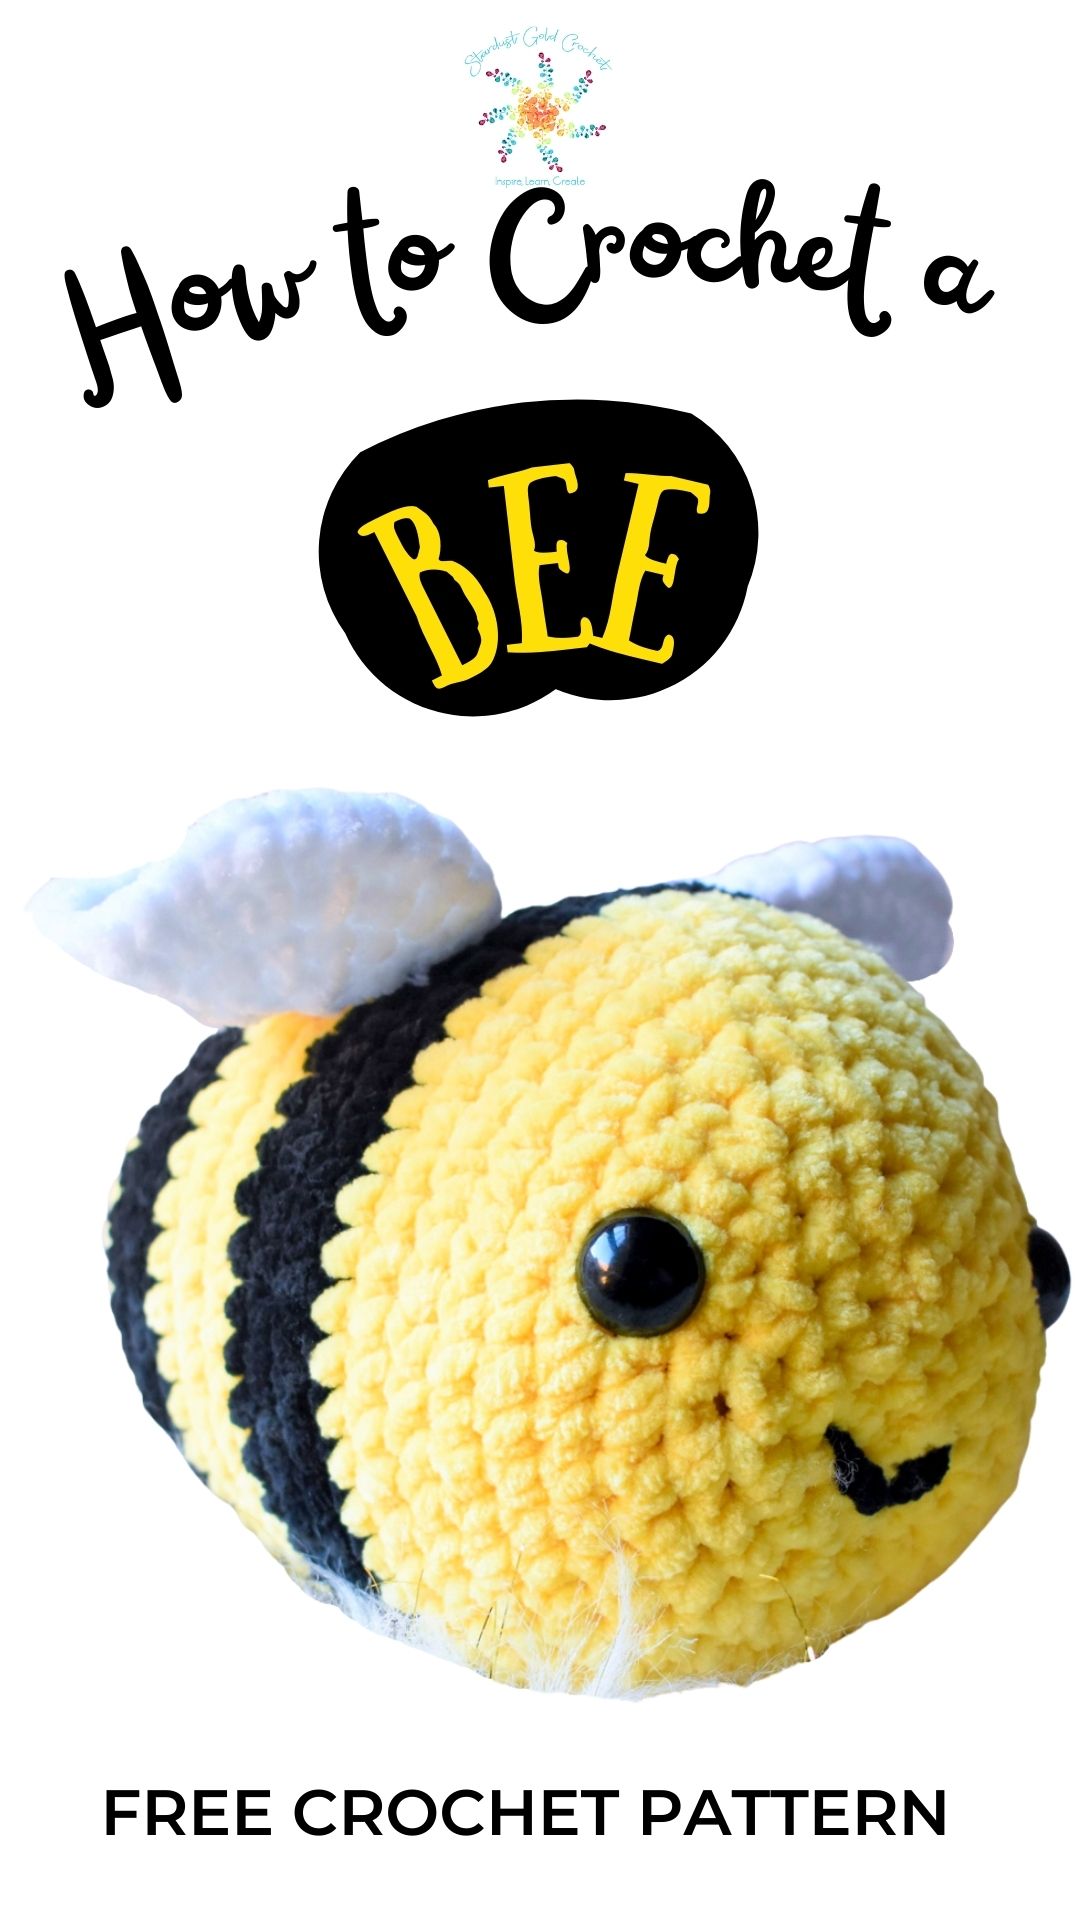 Crochet Bee Pattern, How to Crochet a Bee 